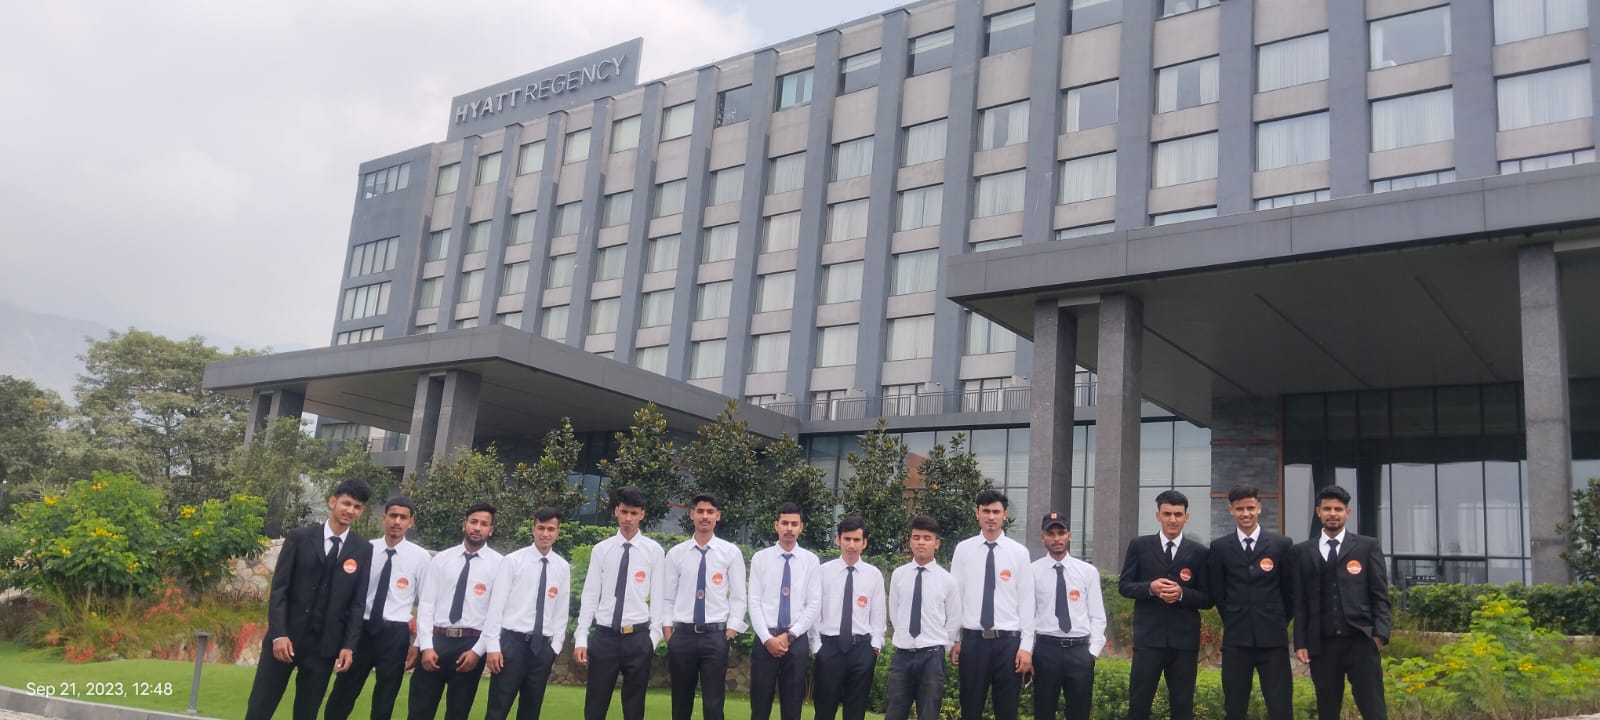 Hotel Management Courses in Dehradun